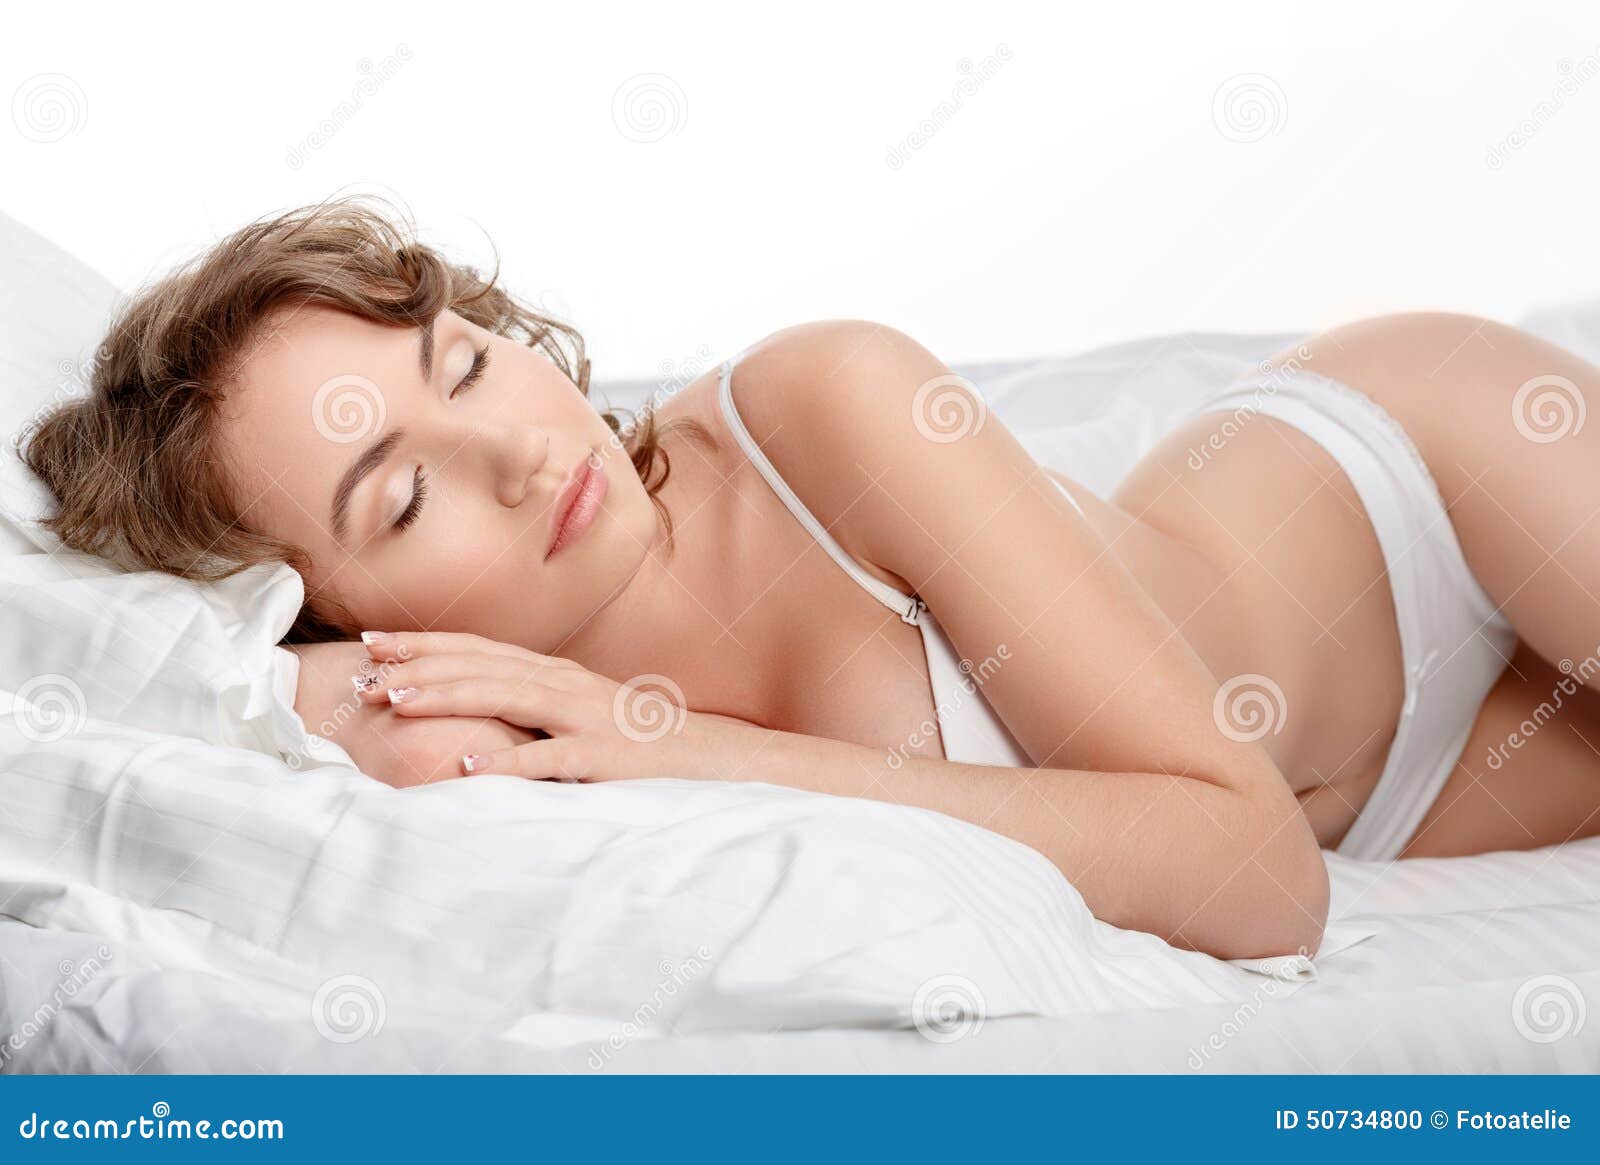 mujeres durmiendo con ropa interior k